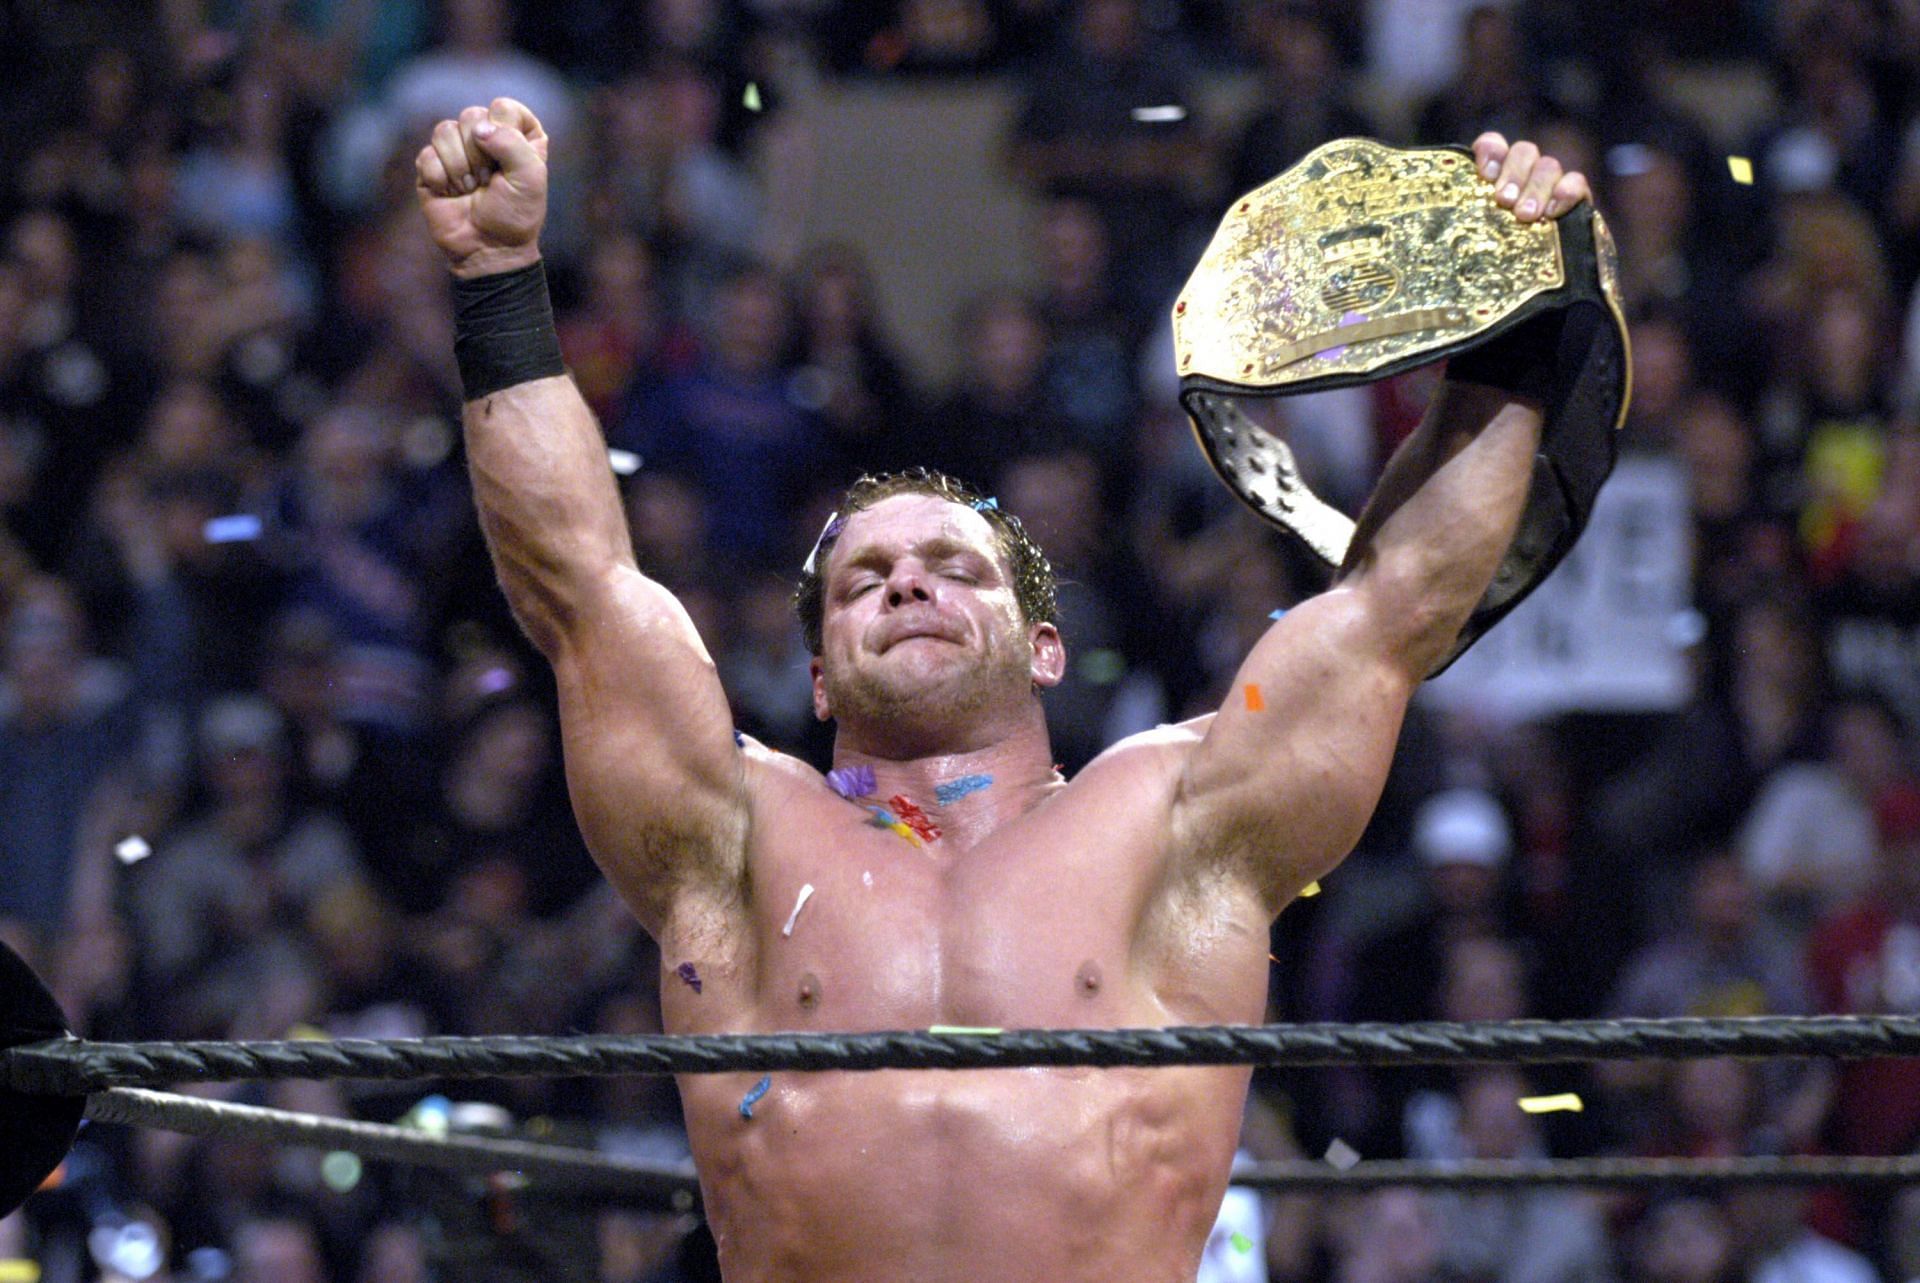 Chris Benoit is a former WWE World Heavyweight Champion